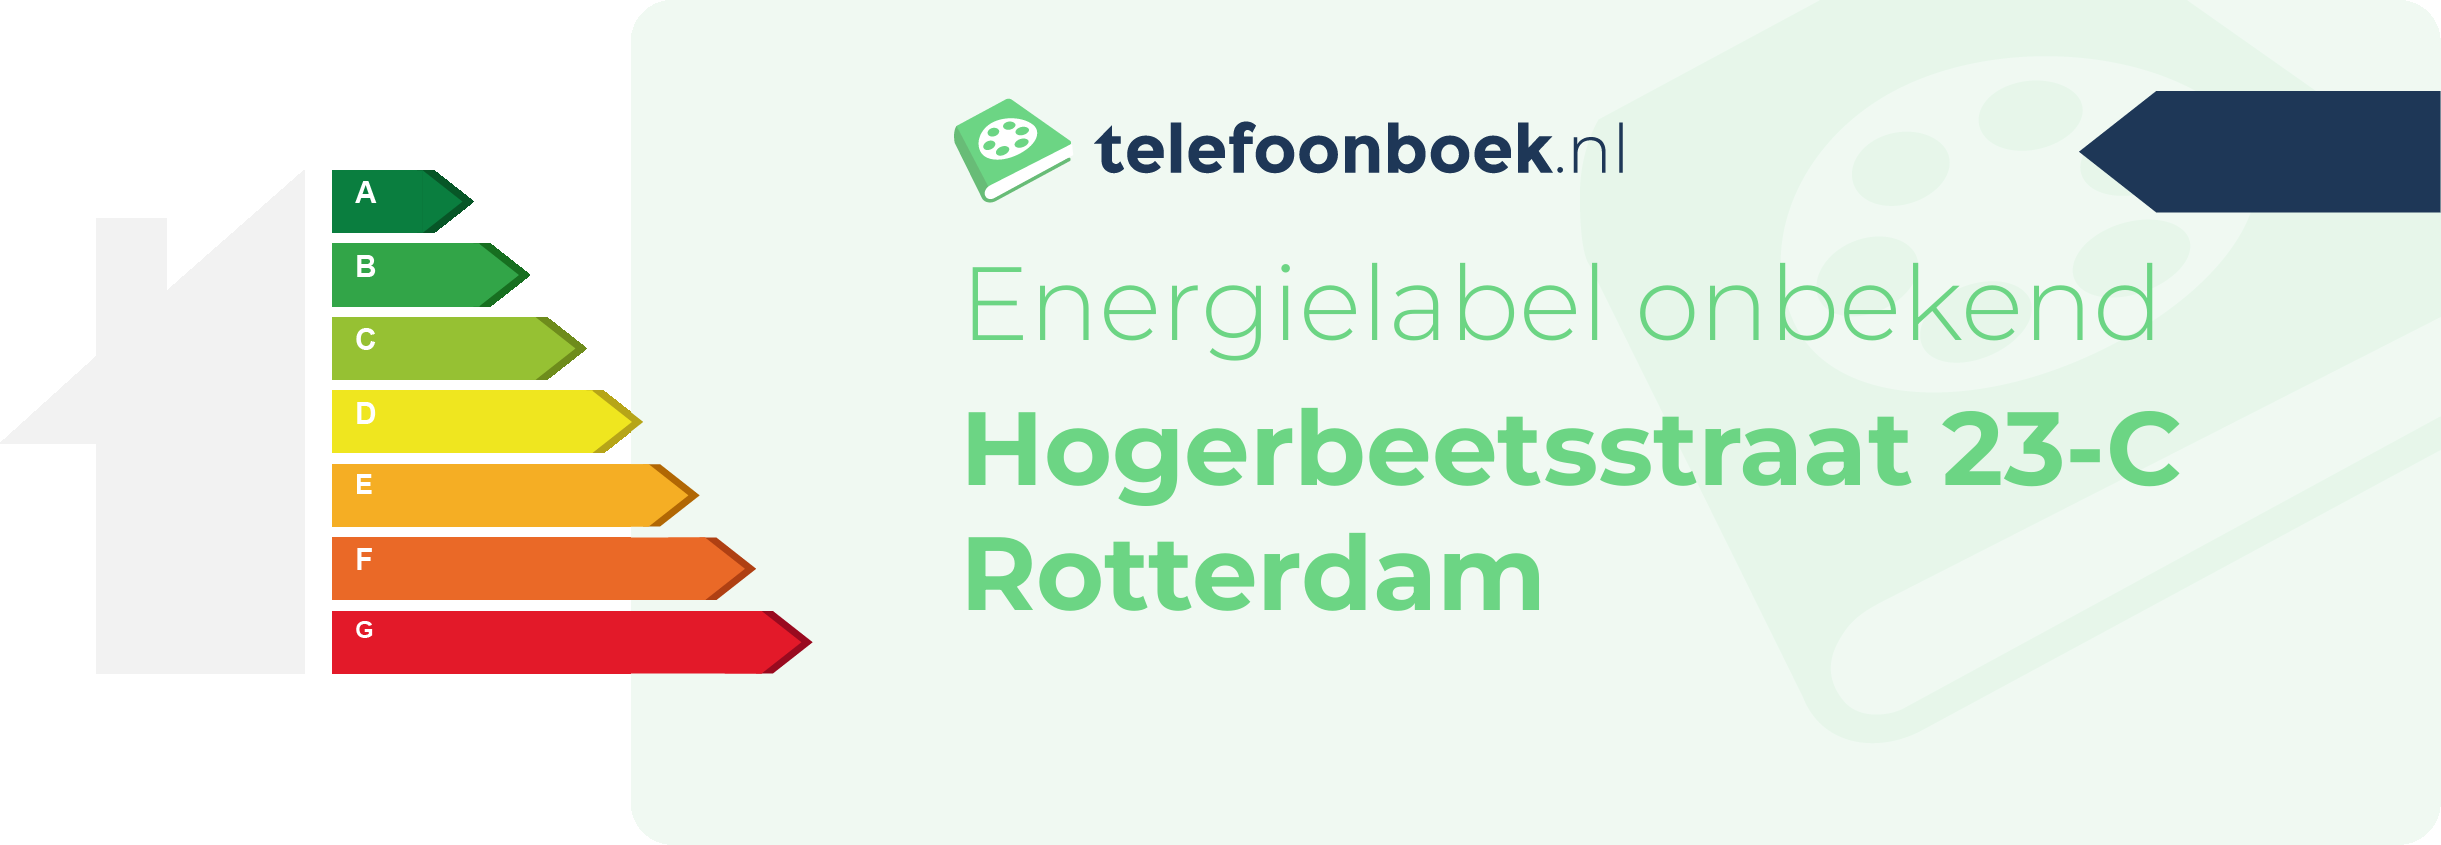 Energielabel Hogerbeetsstraat 23-C Rotterdam